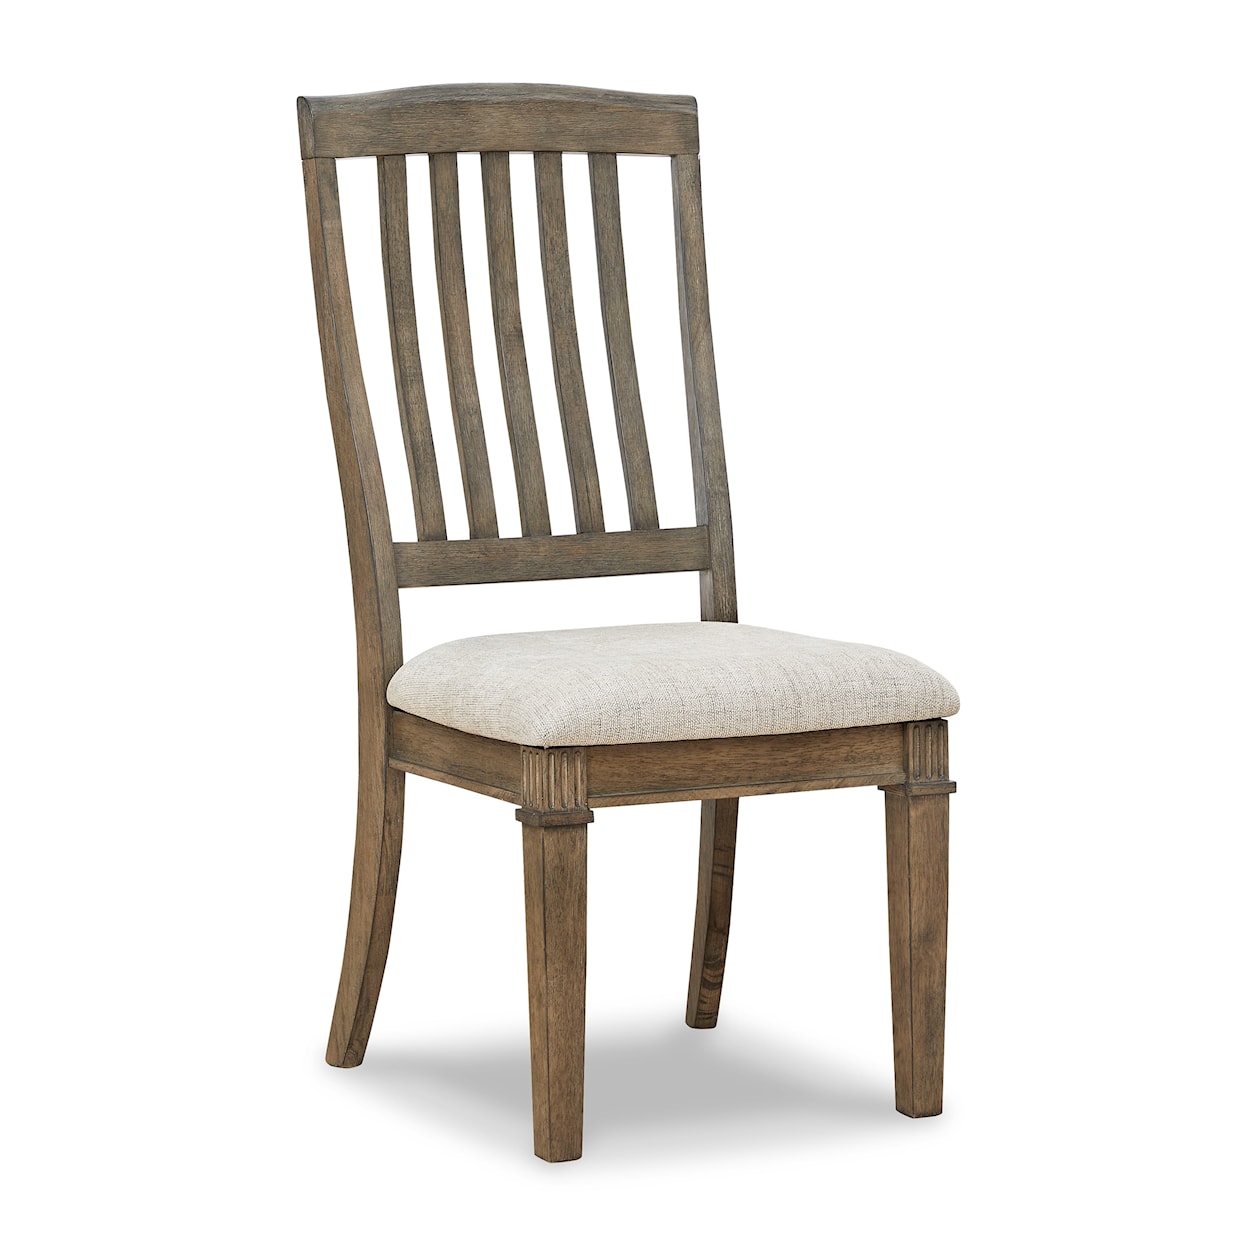 Benchcraft Markenburg Dining Chair